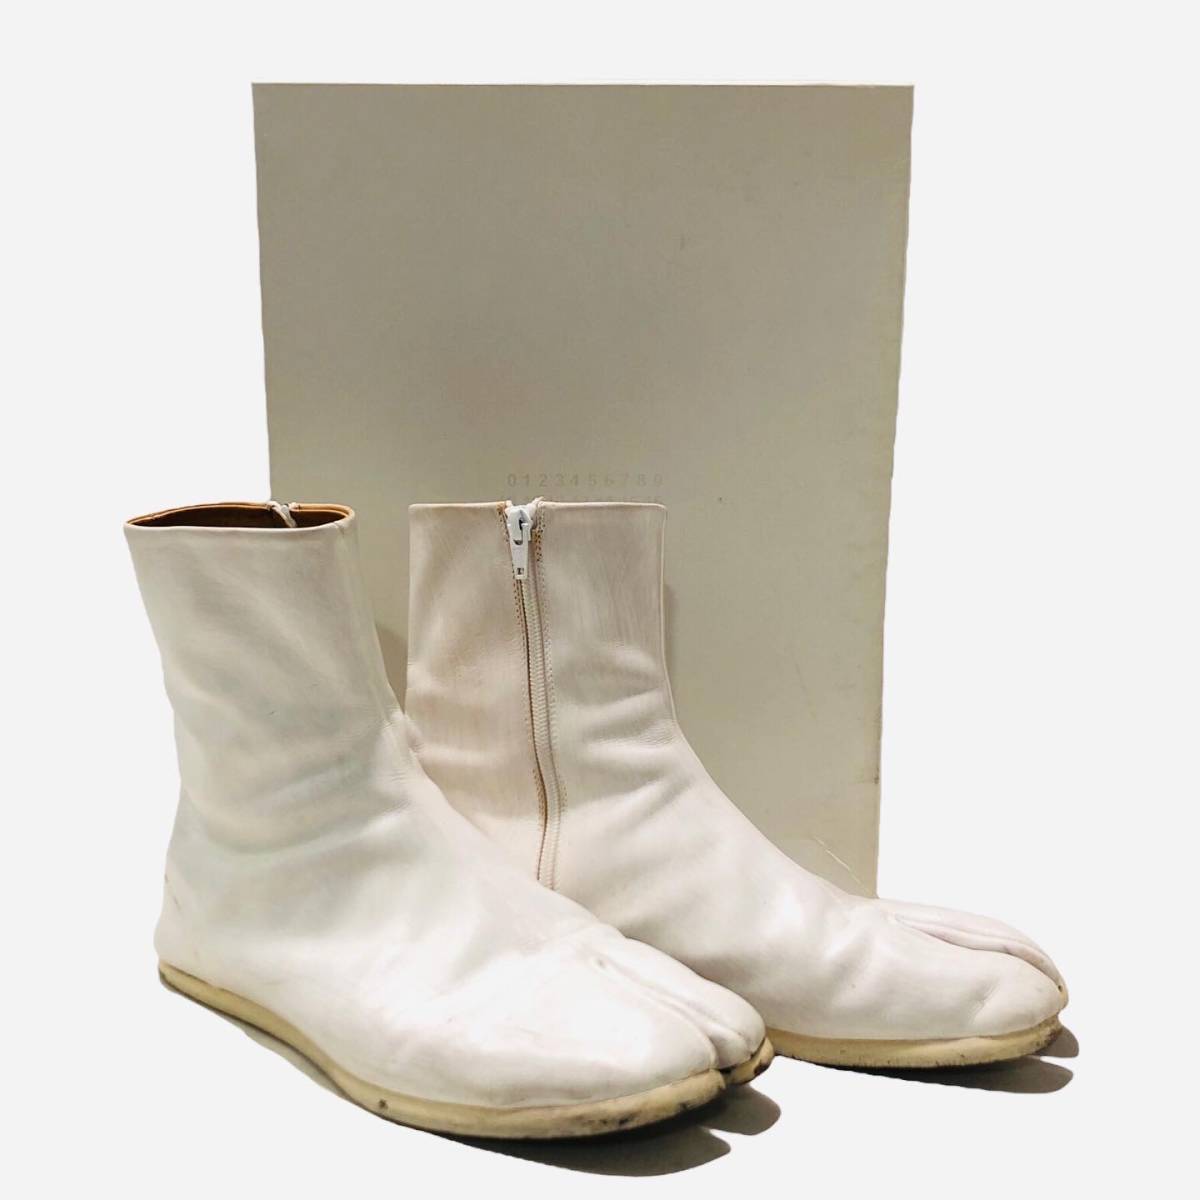 Maison Margiela メゾンマルジェラ 足袋ブーツ S57WU0096 ホワイト サイズ43 タビ 店舗受取可